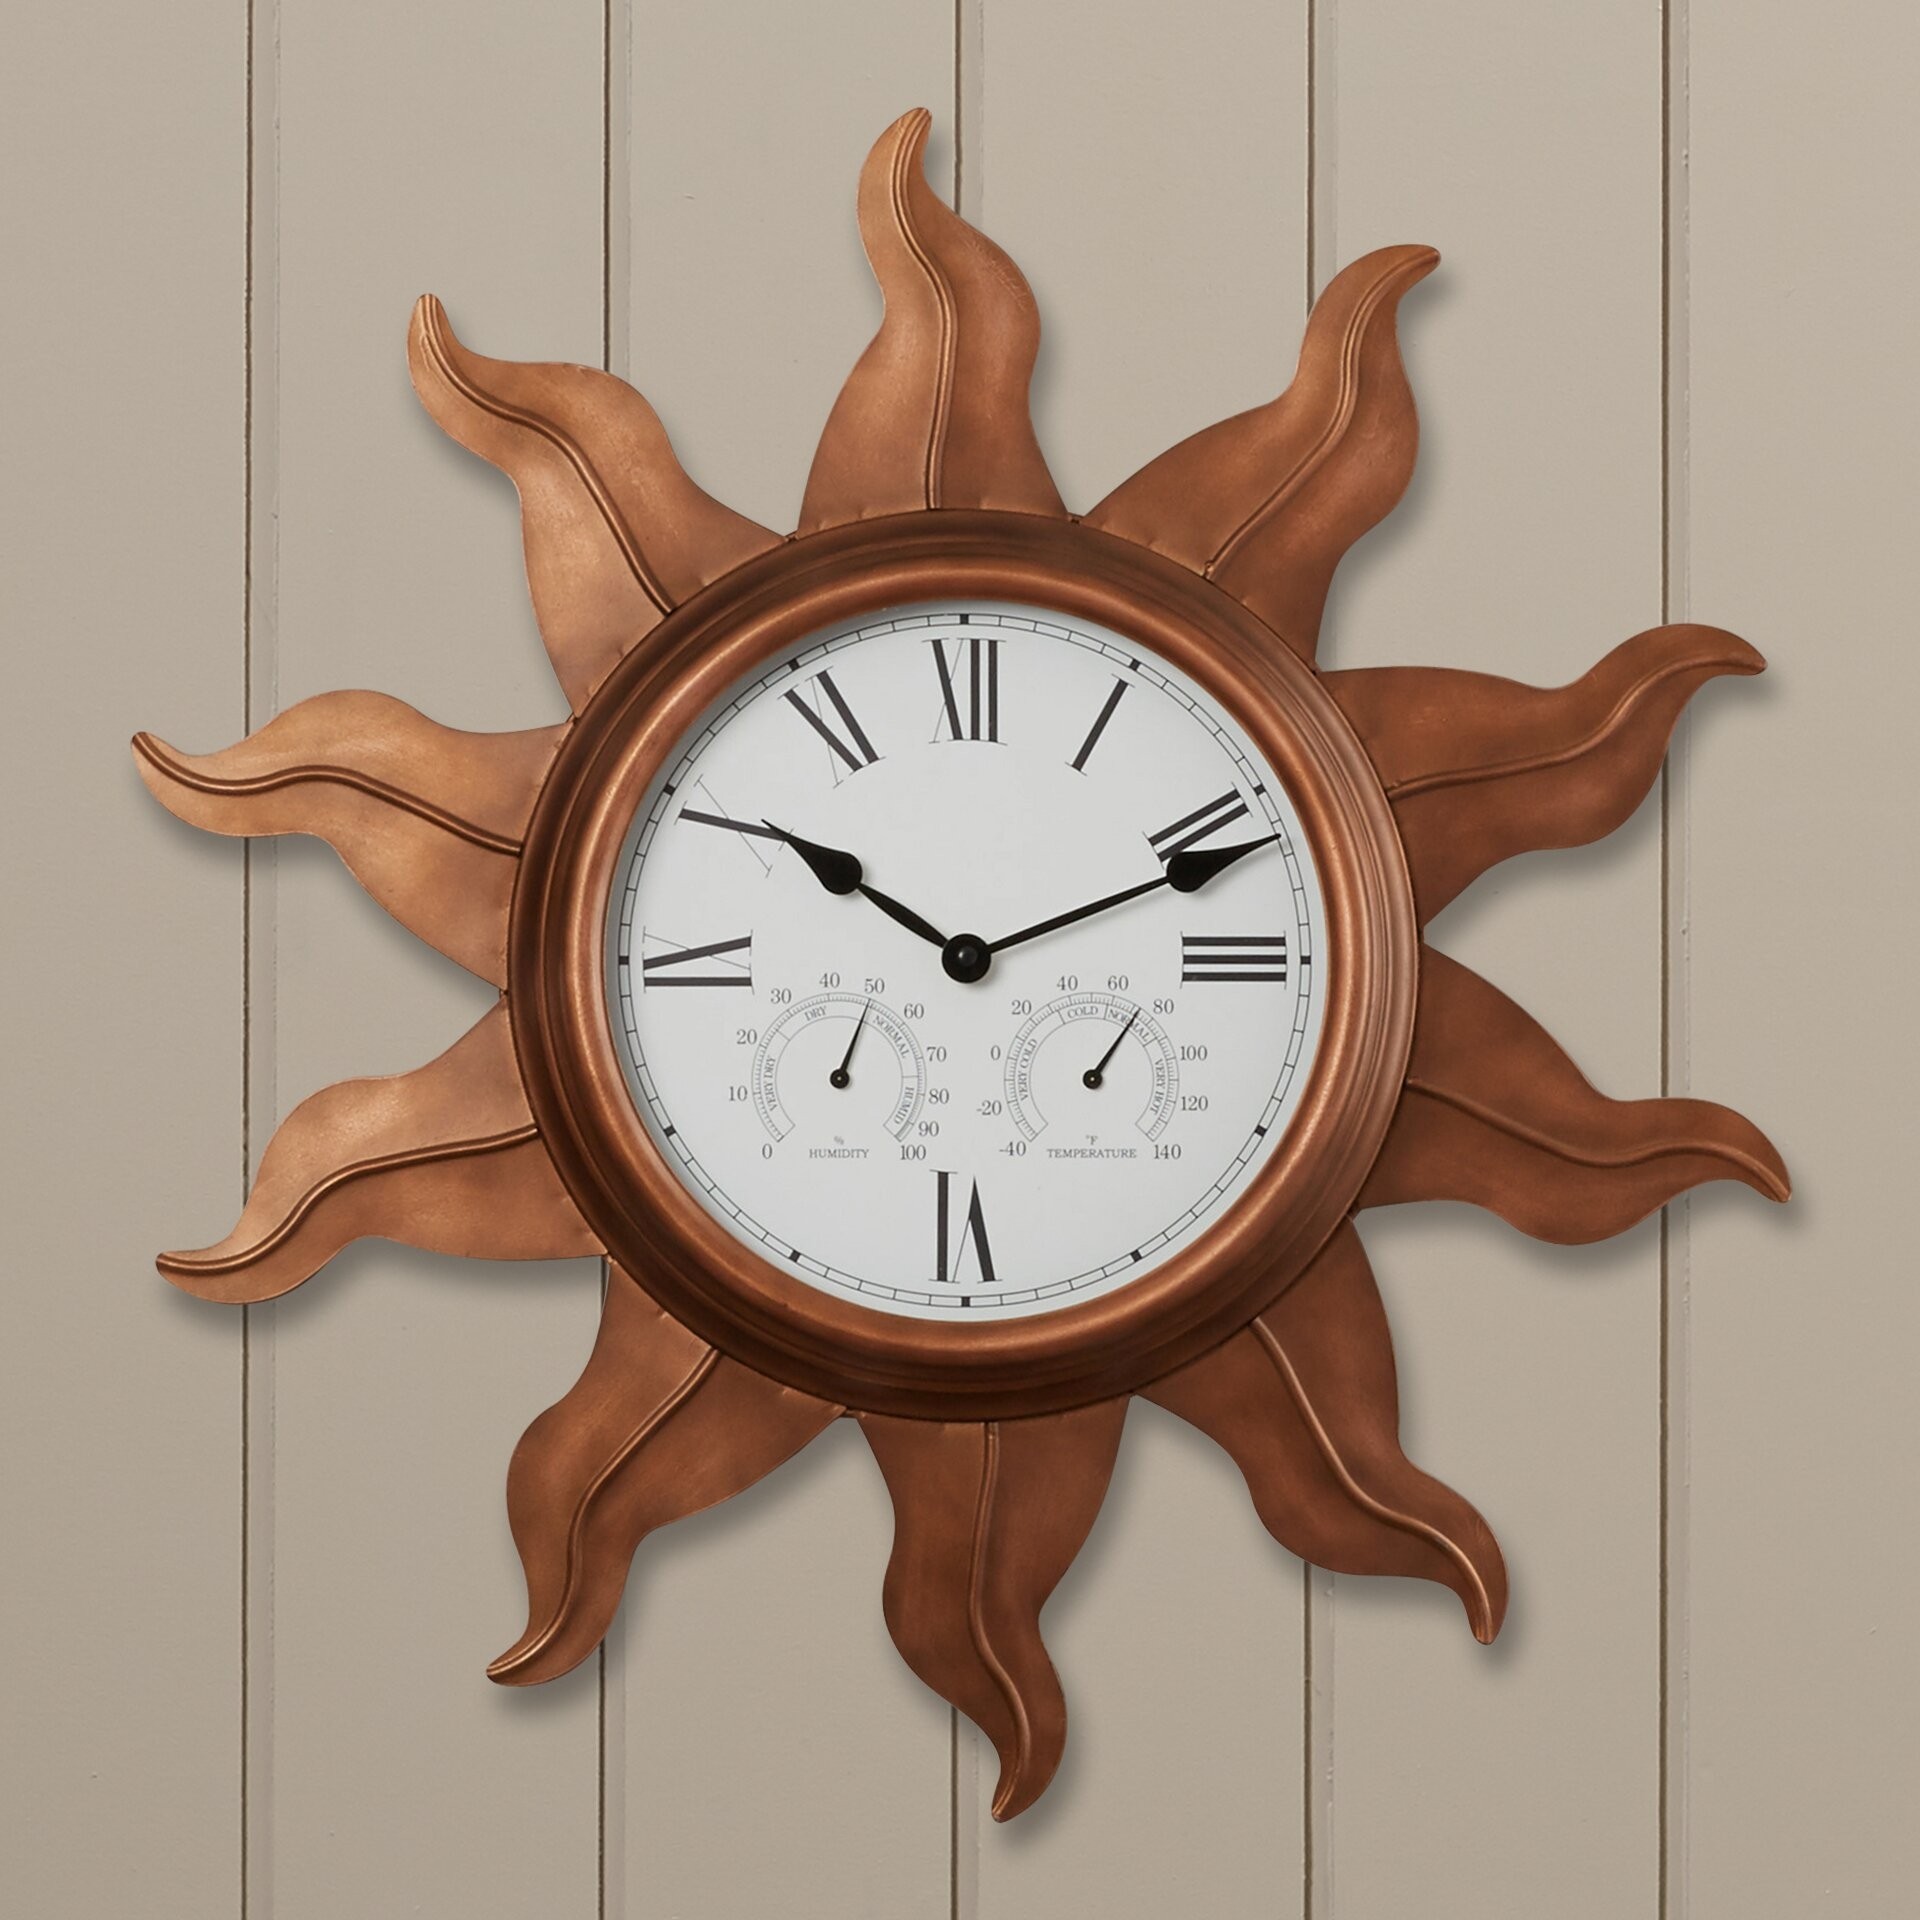 Beachcrest home manasota 24 indoor outdoor wall clock